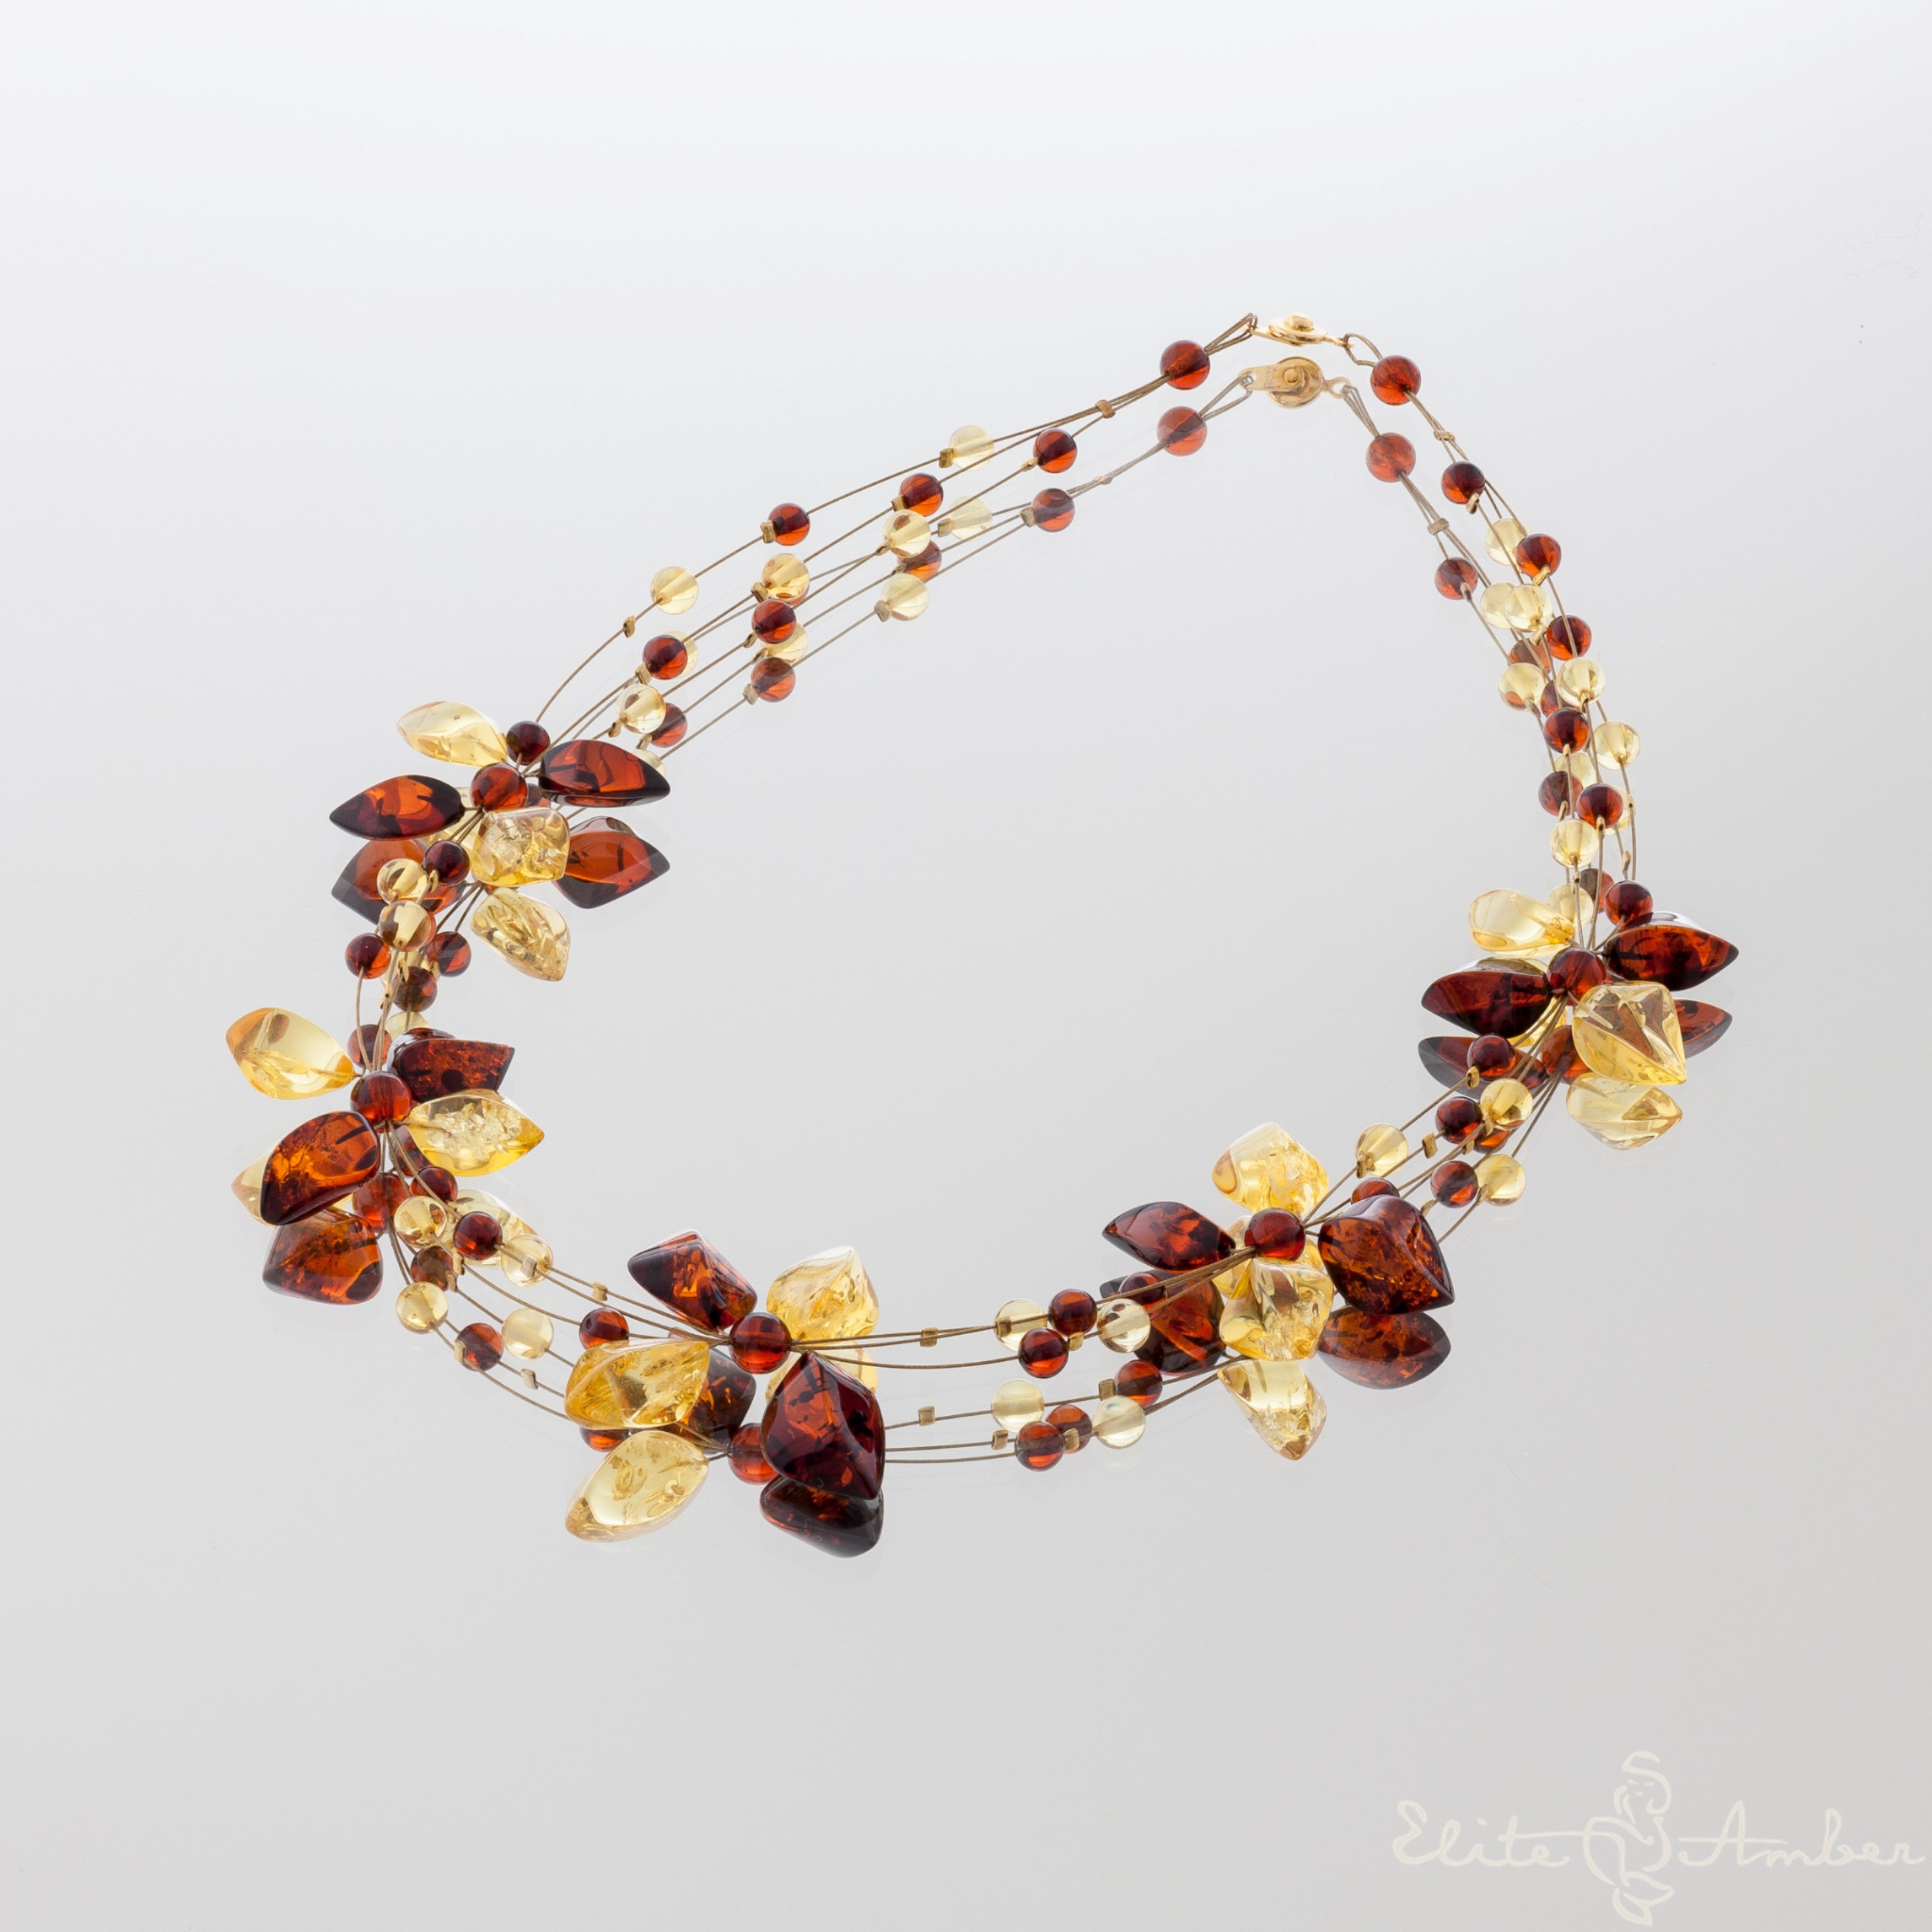 Amber necklace "Brilliant lemon flowers"